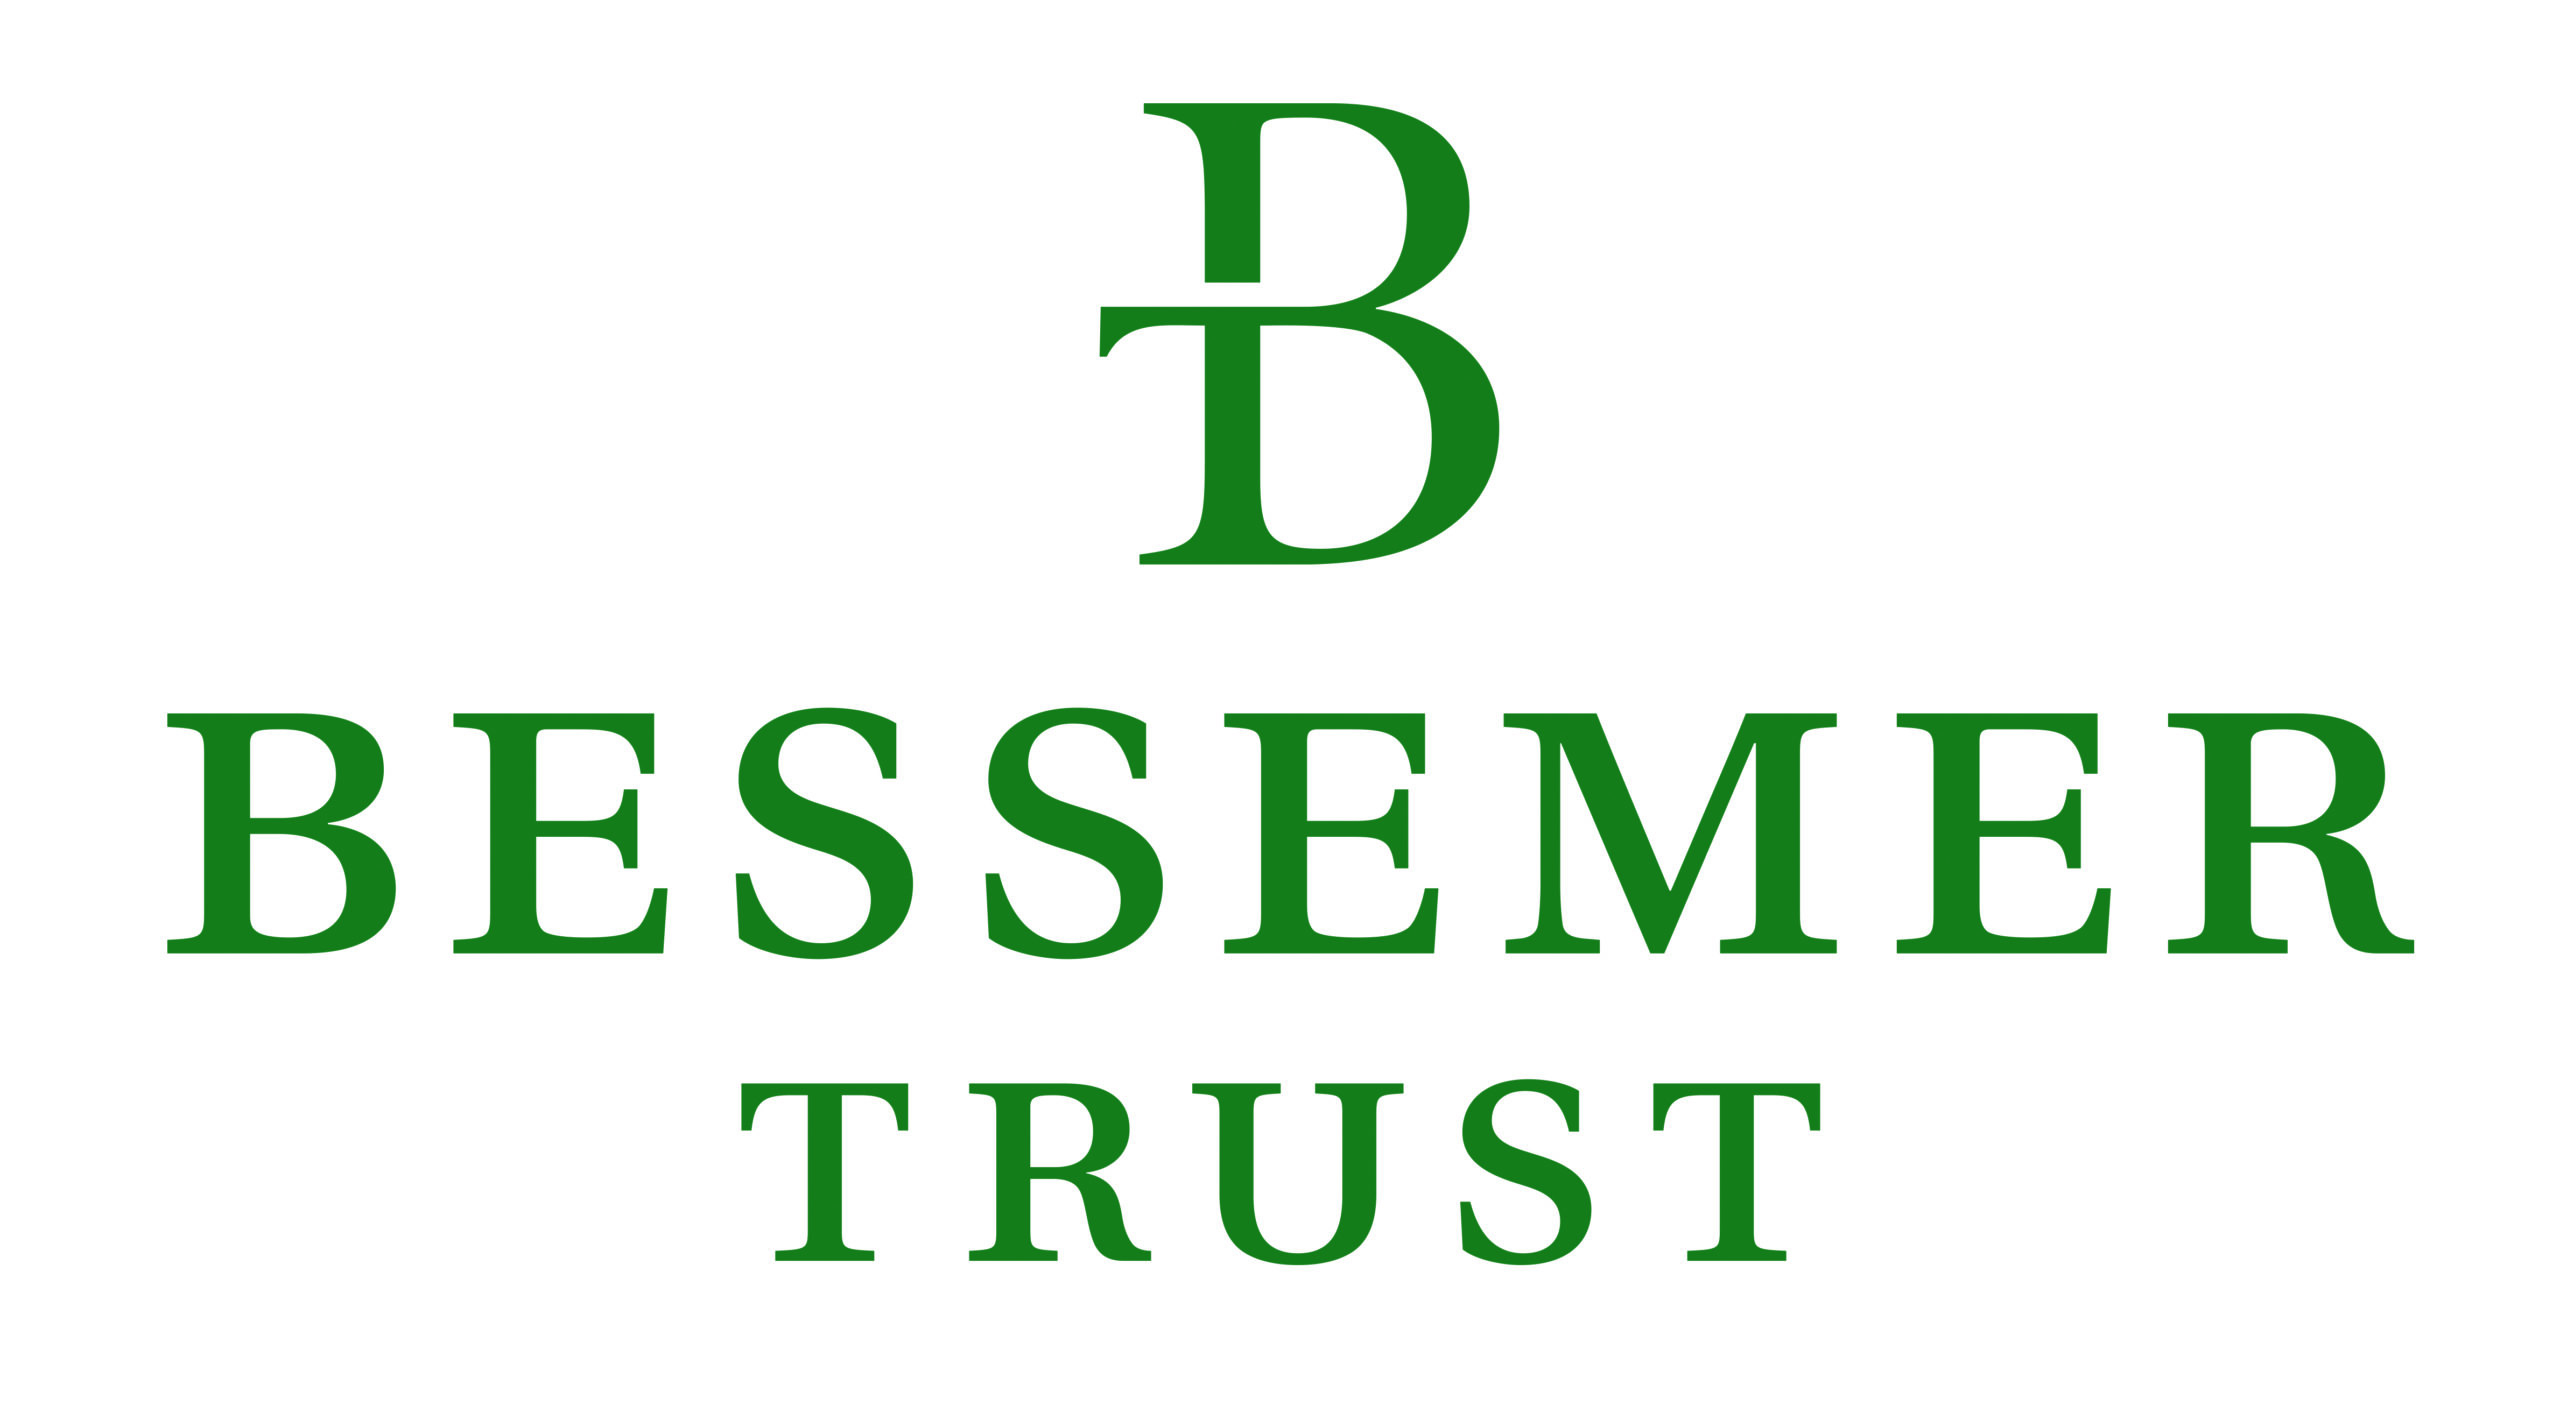 Bessemer trust